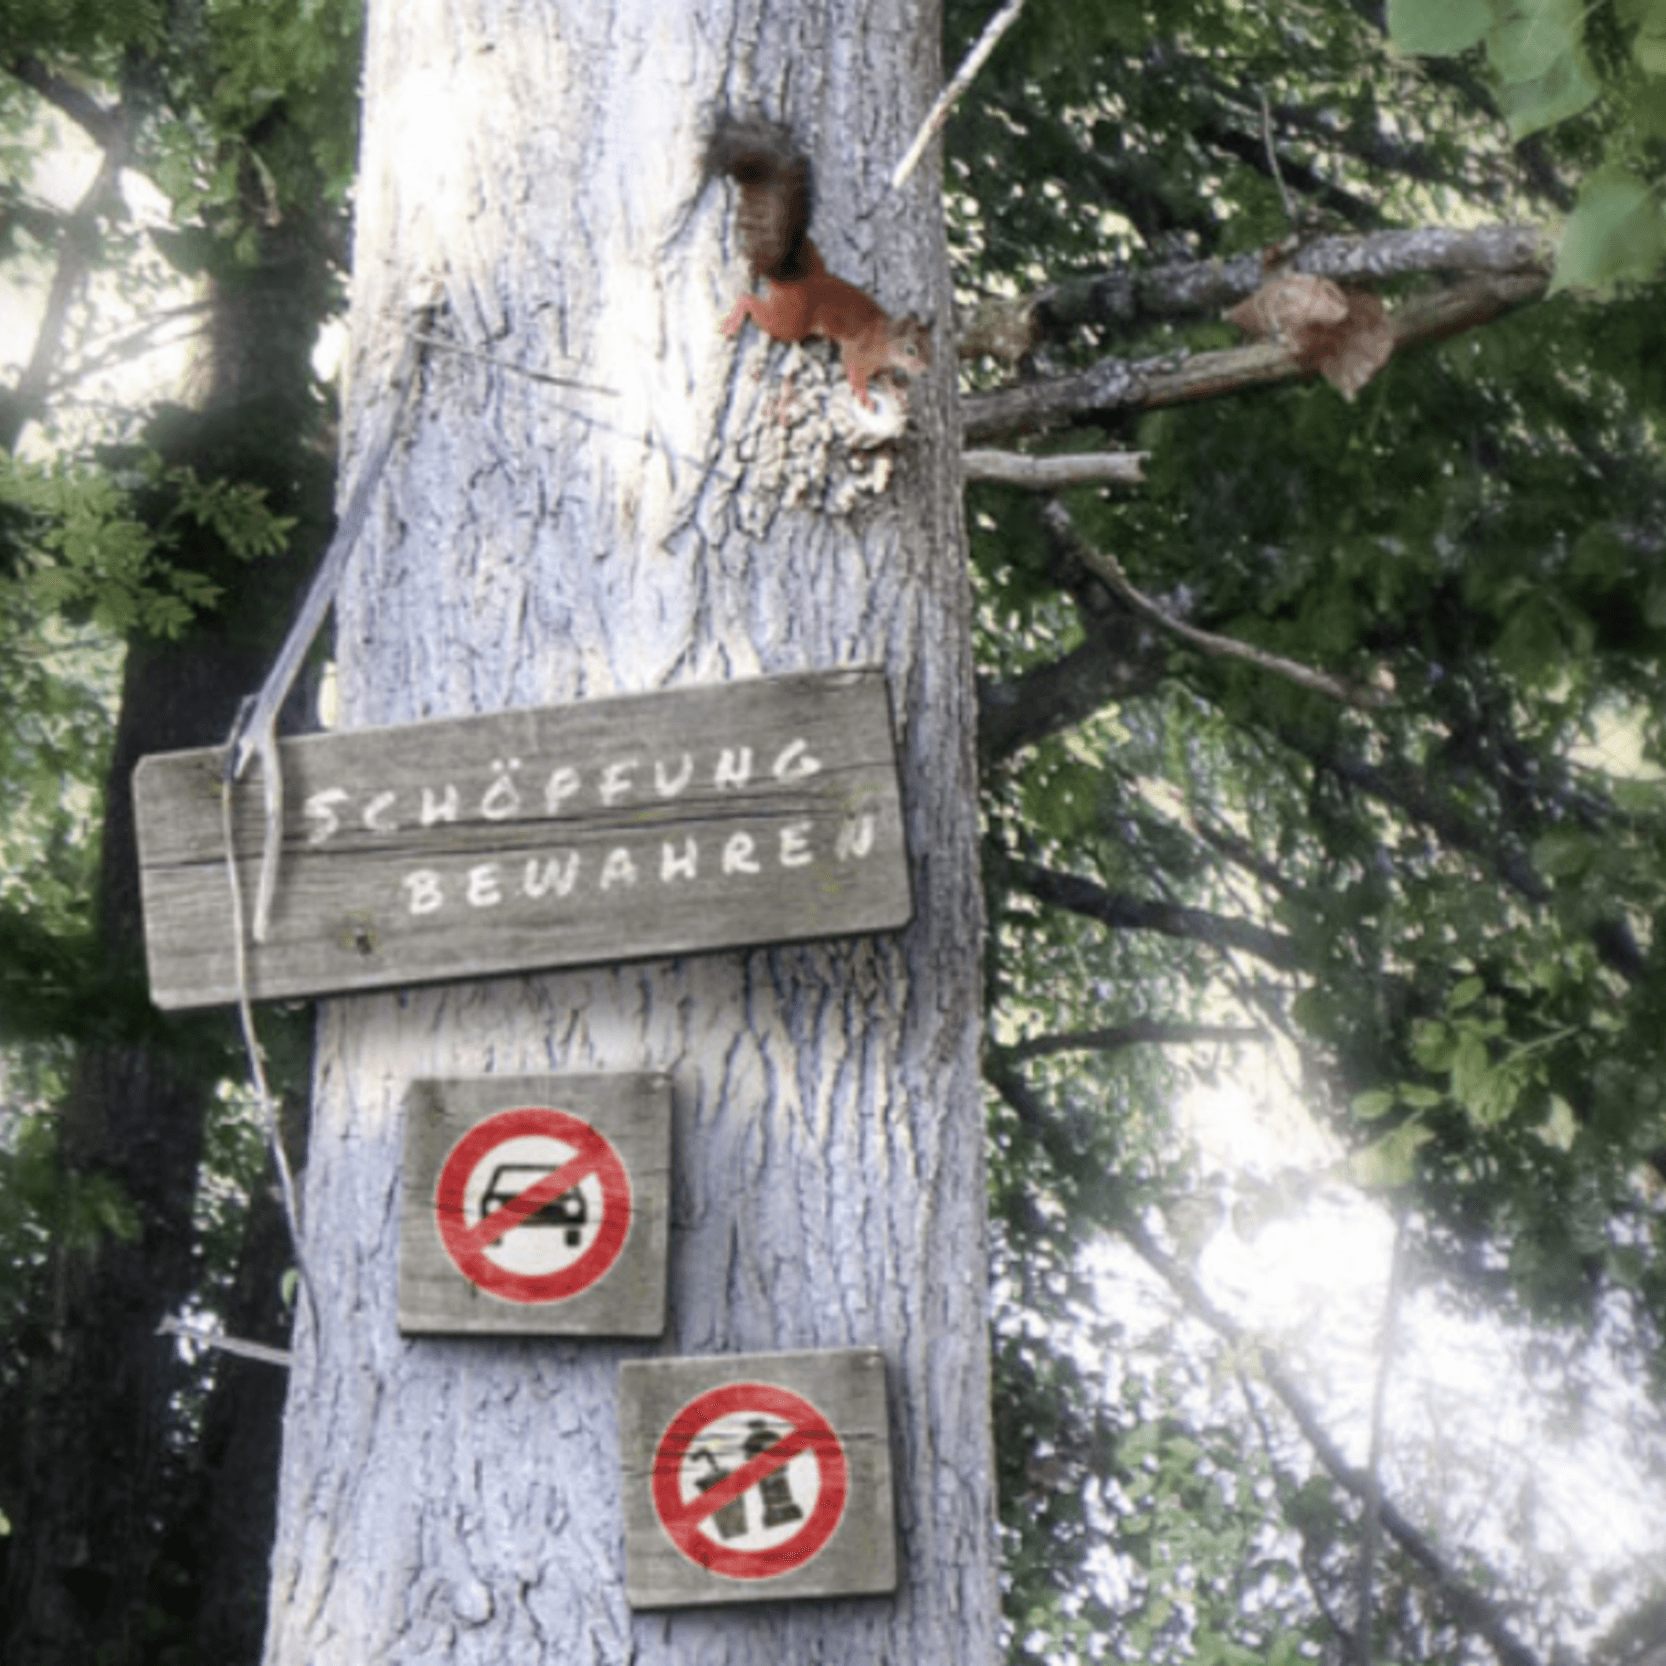 Teil eines Baumstammes im Wald. Auf diesem läuft ein Eichhörnchen. Zudem ist ein großes Schild angebracht: Schöpfung bewahren. Zwei kleinere Verbotsschilder hängen darunter: Keine Autos, keine Flaschen. Im Hintergrund ist ein Wald erkennbar. 